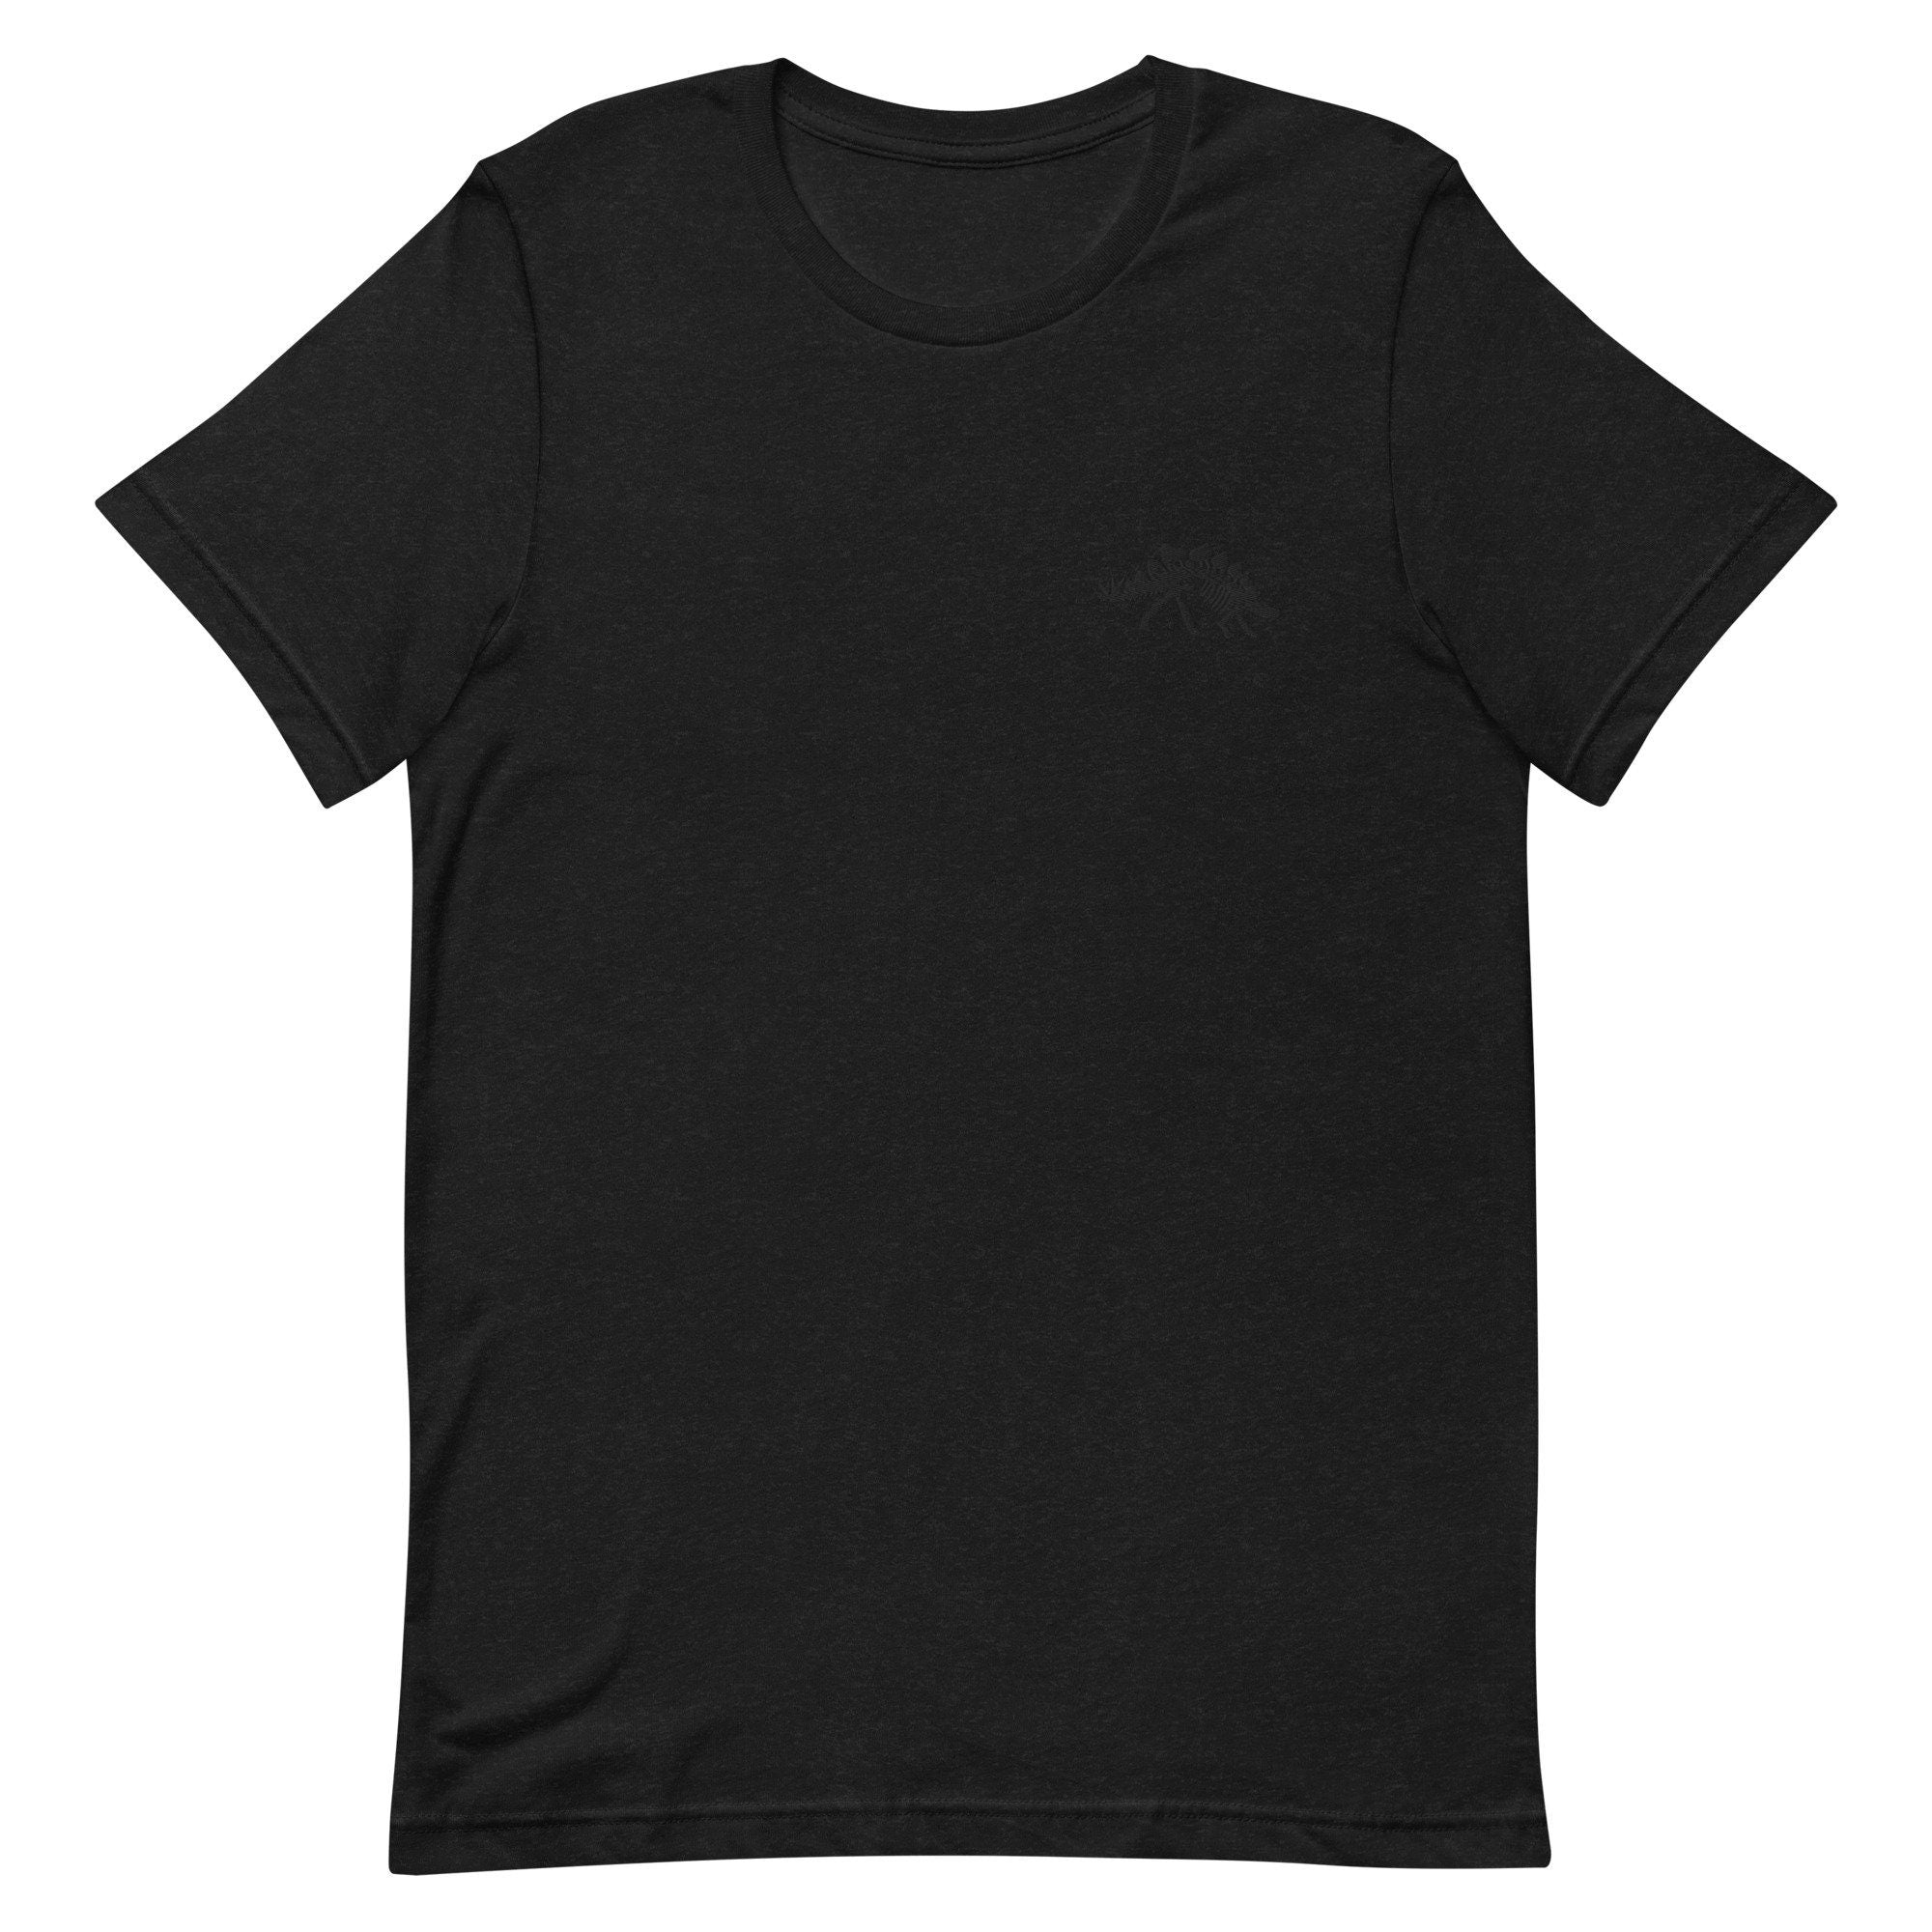 Stegosaurus Skeleton Premium Men's T-Shirt, Embroidered Men's T-Shirt Gift for Boyfriend, Men's Short Sleeve Shirt - Multiple Colors